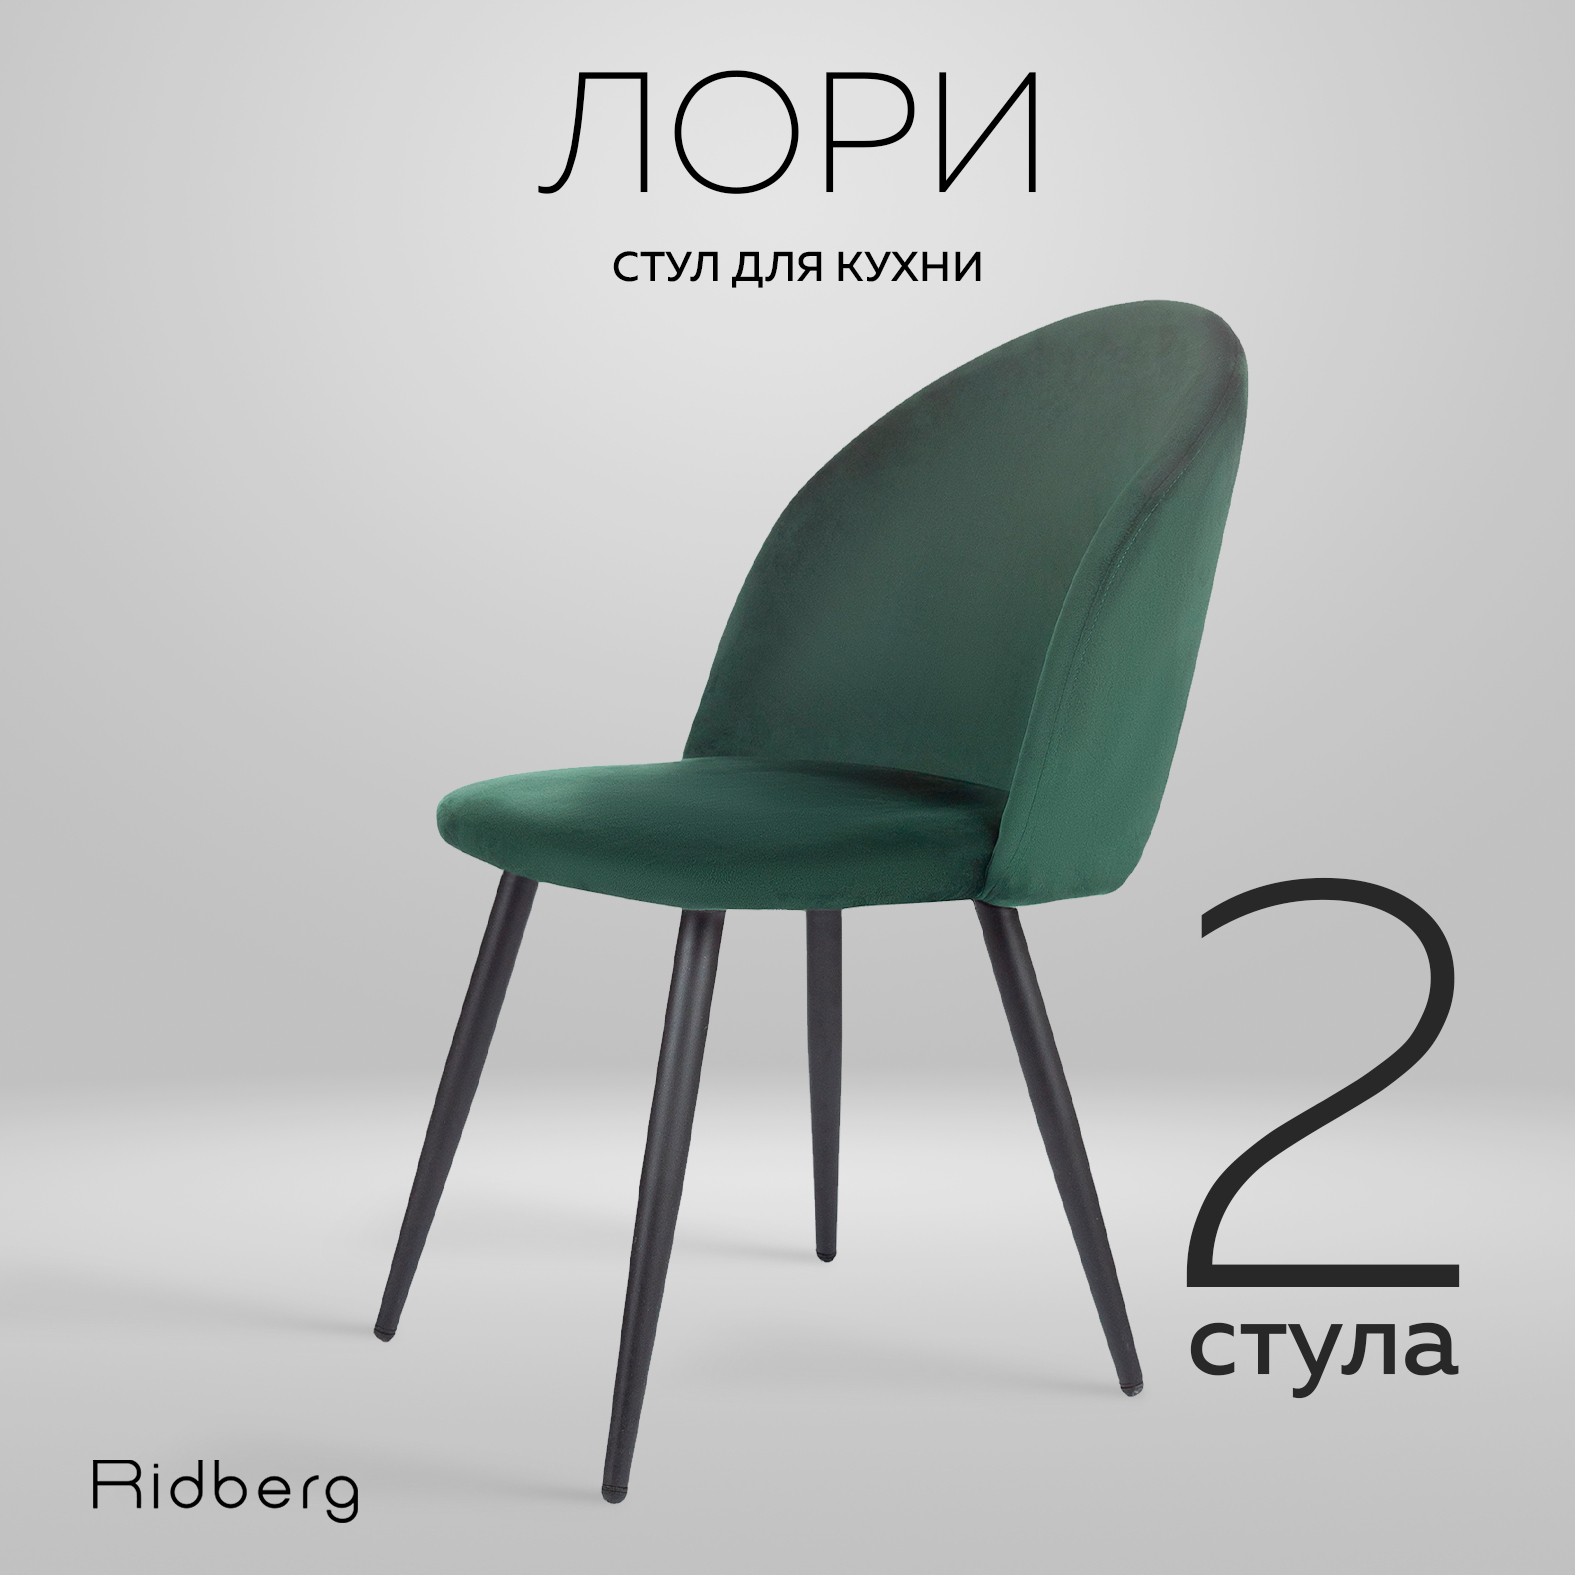 Комплект стульев 2 шт. RIDBERG Лори, green - купить в Москве, цены на Мегамаркет | 600009625271